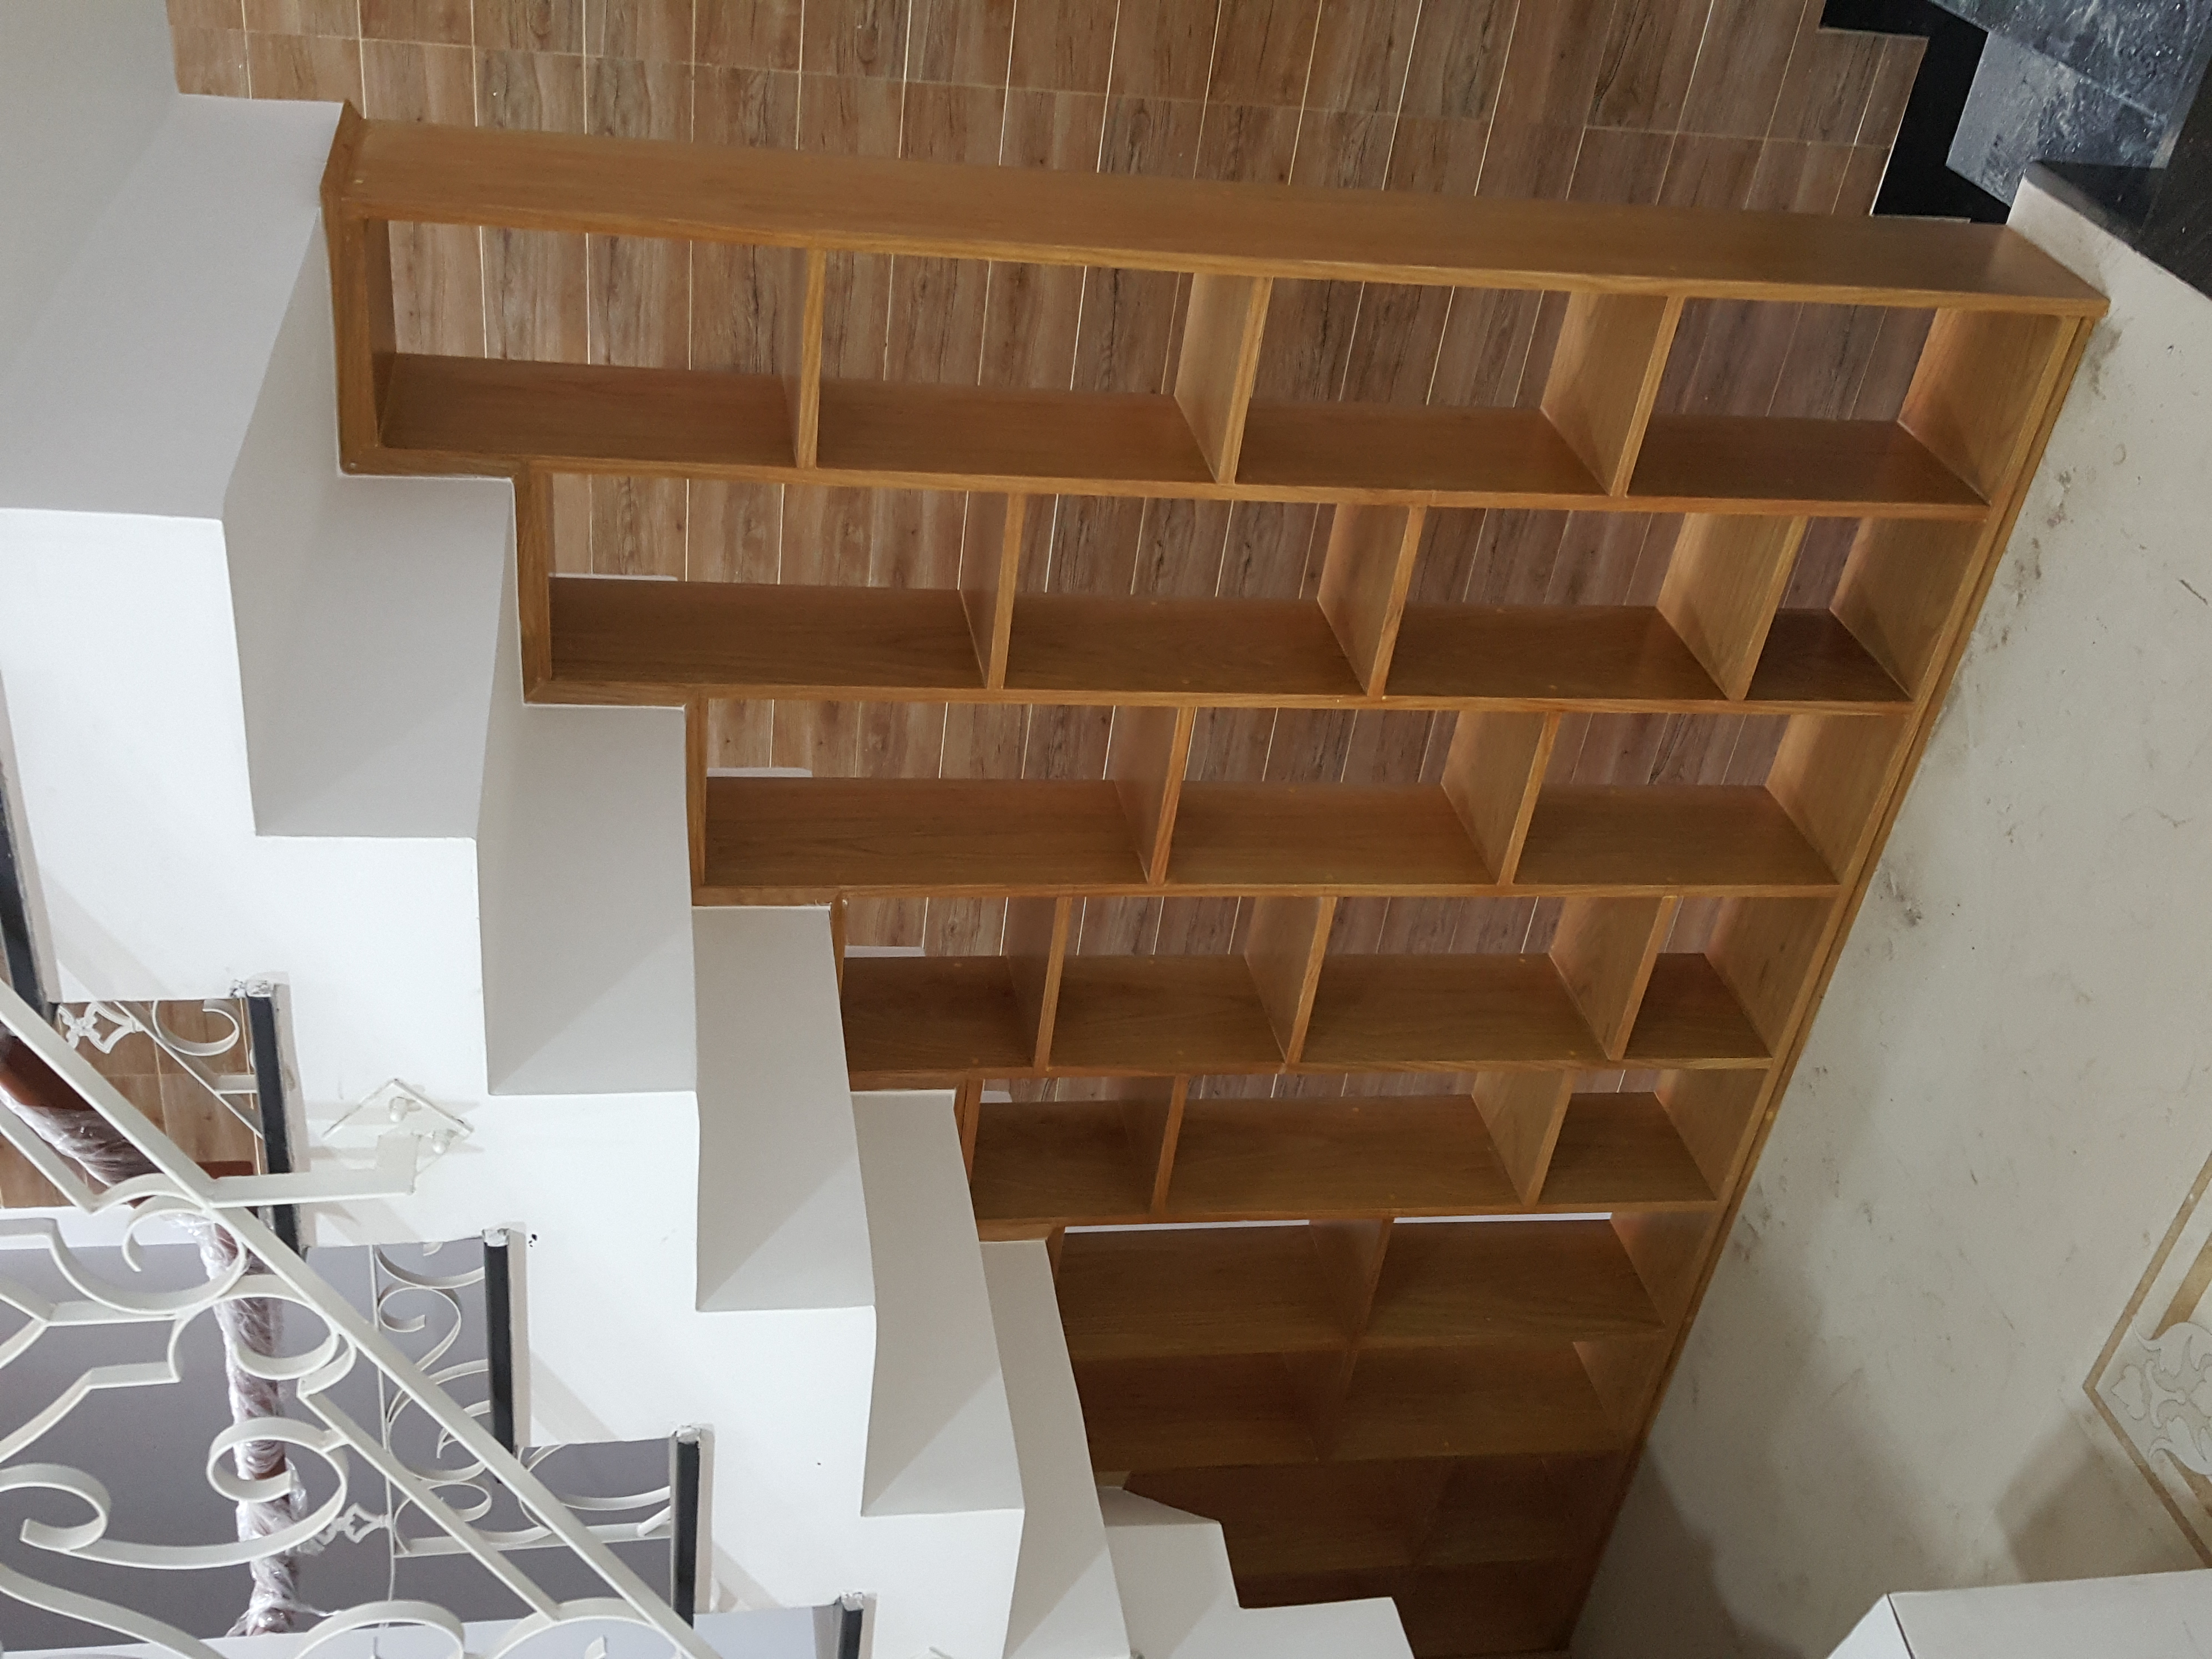 Cầu thang, phong cách hiện đại Modern, hoàn thiện nội thất, nhà phố quận 12